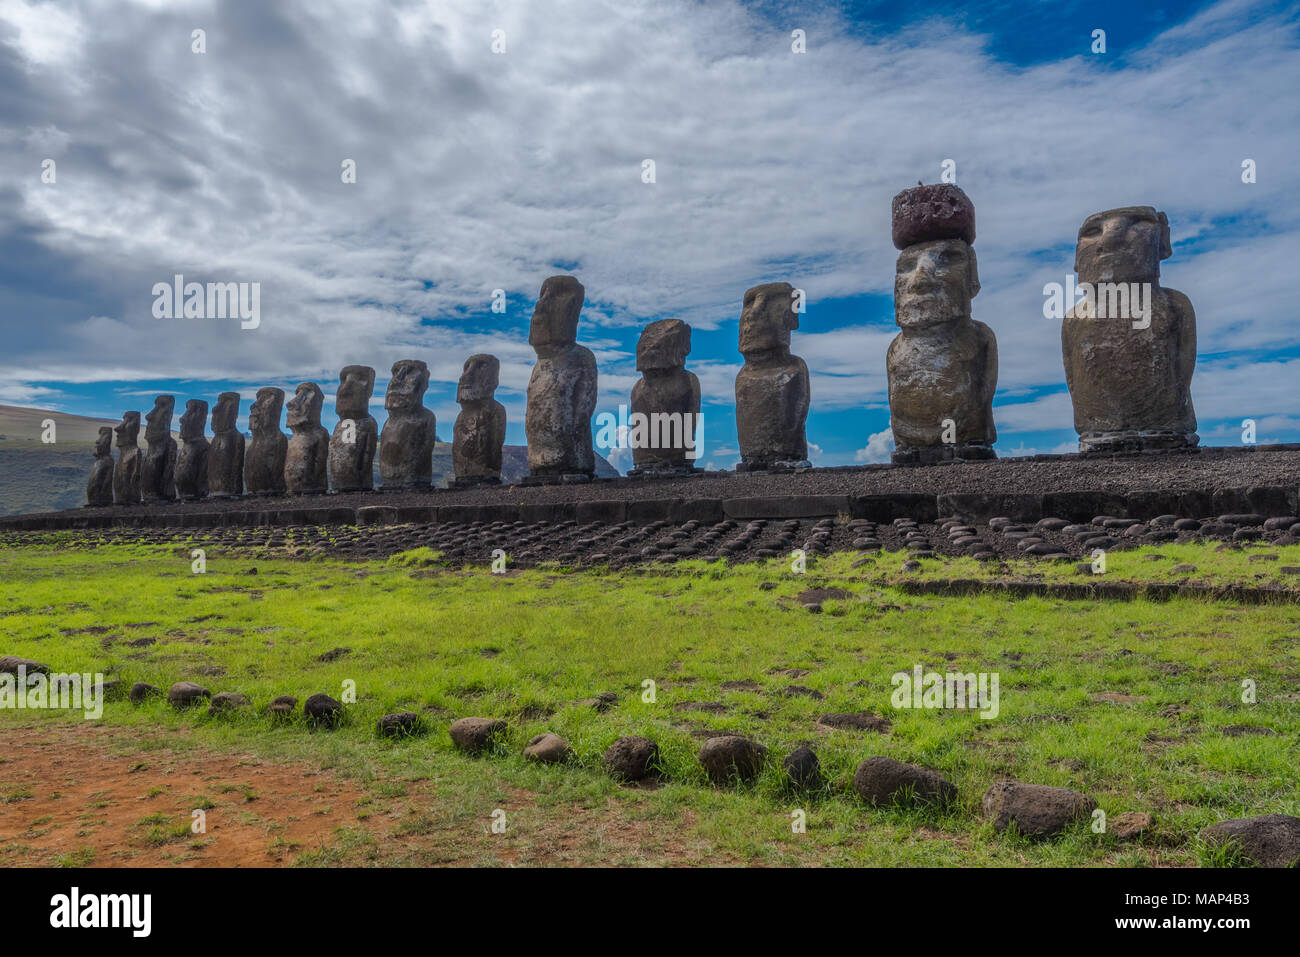 Ampia angolazione di 15 statue Moai rivolti verso l'interno sopra l'isola di pasqua a Tongariki con una drammatica nuvola bianca e blu sullo sfondo del cielo. Foto Stock